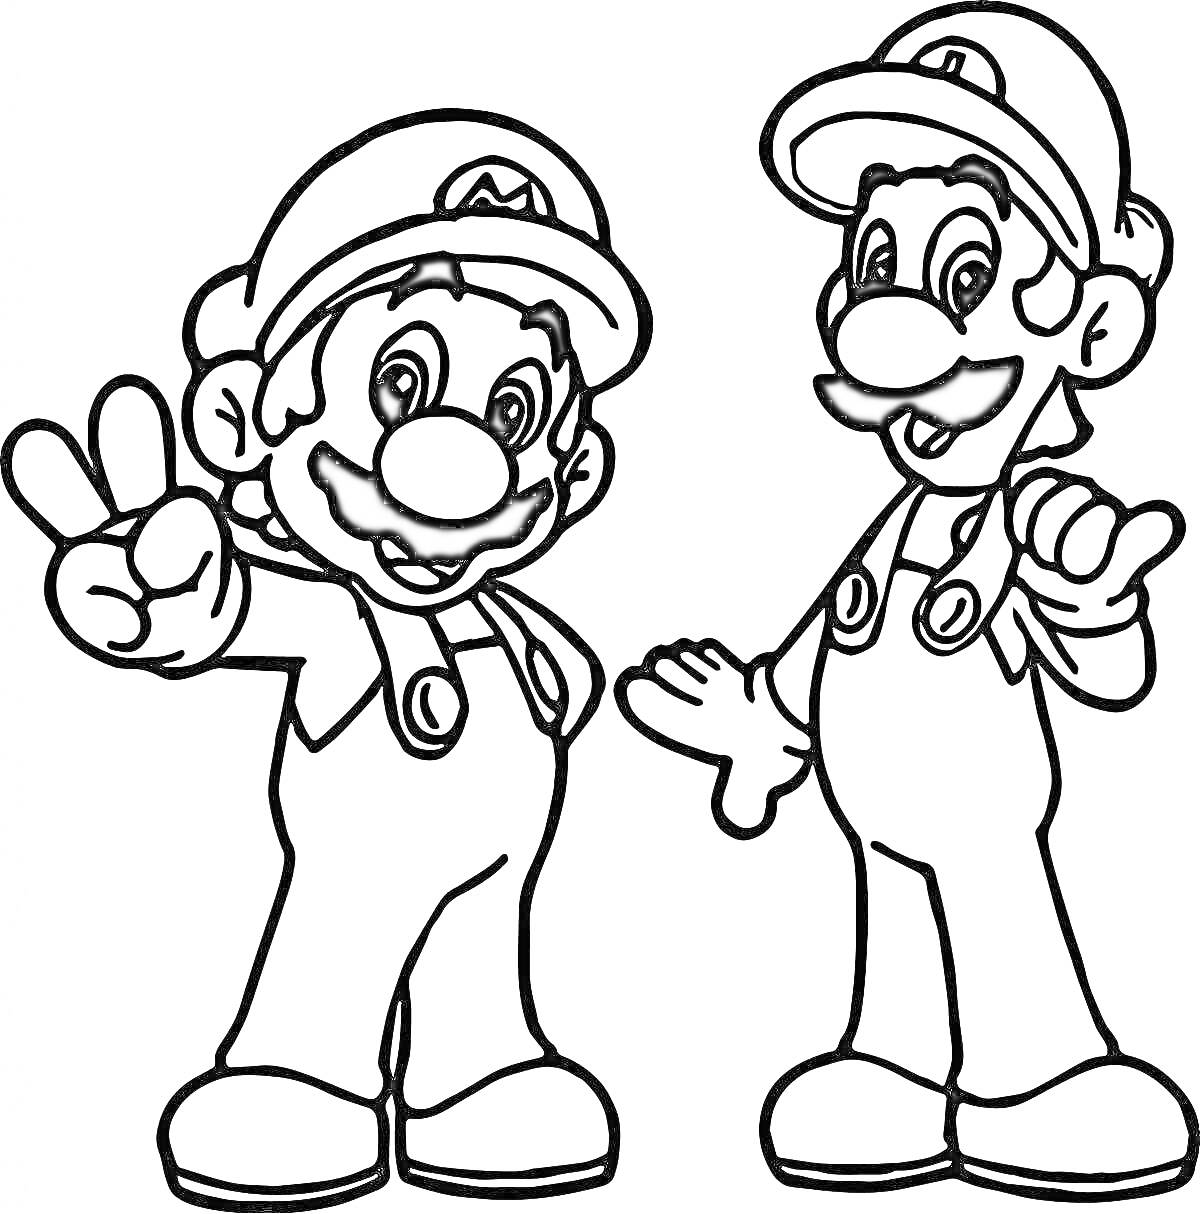 Раскраска Два персонажа в костюмах Марио, один показывает знак 